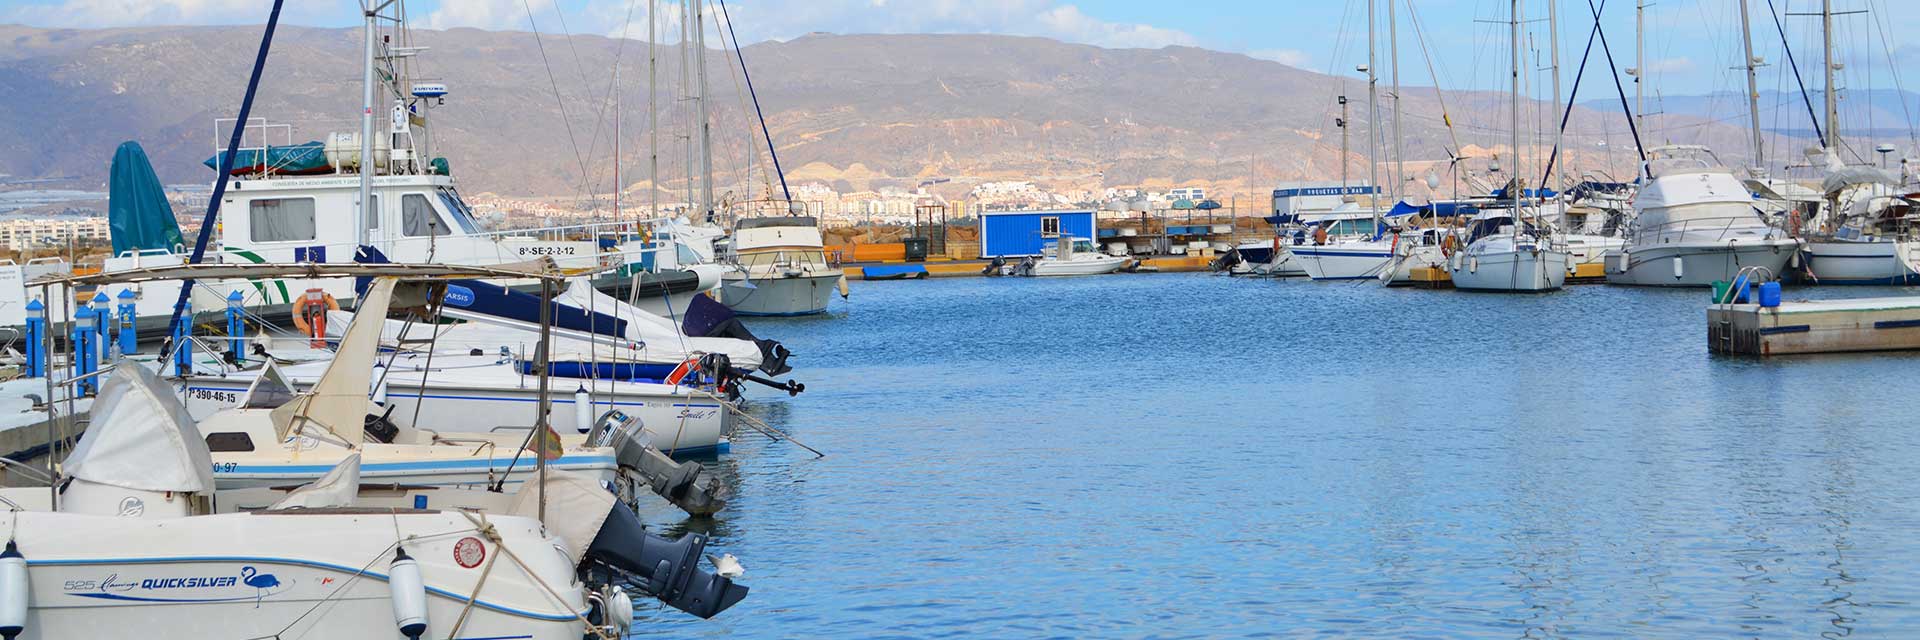 Puerto deportivo de Roquetas de Mar ▶ Costa de Almería